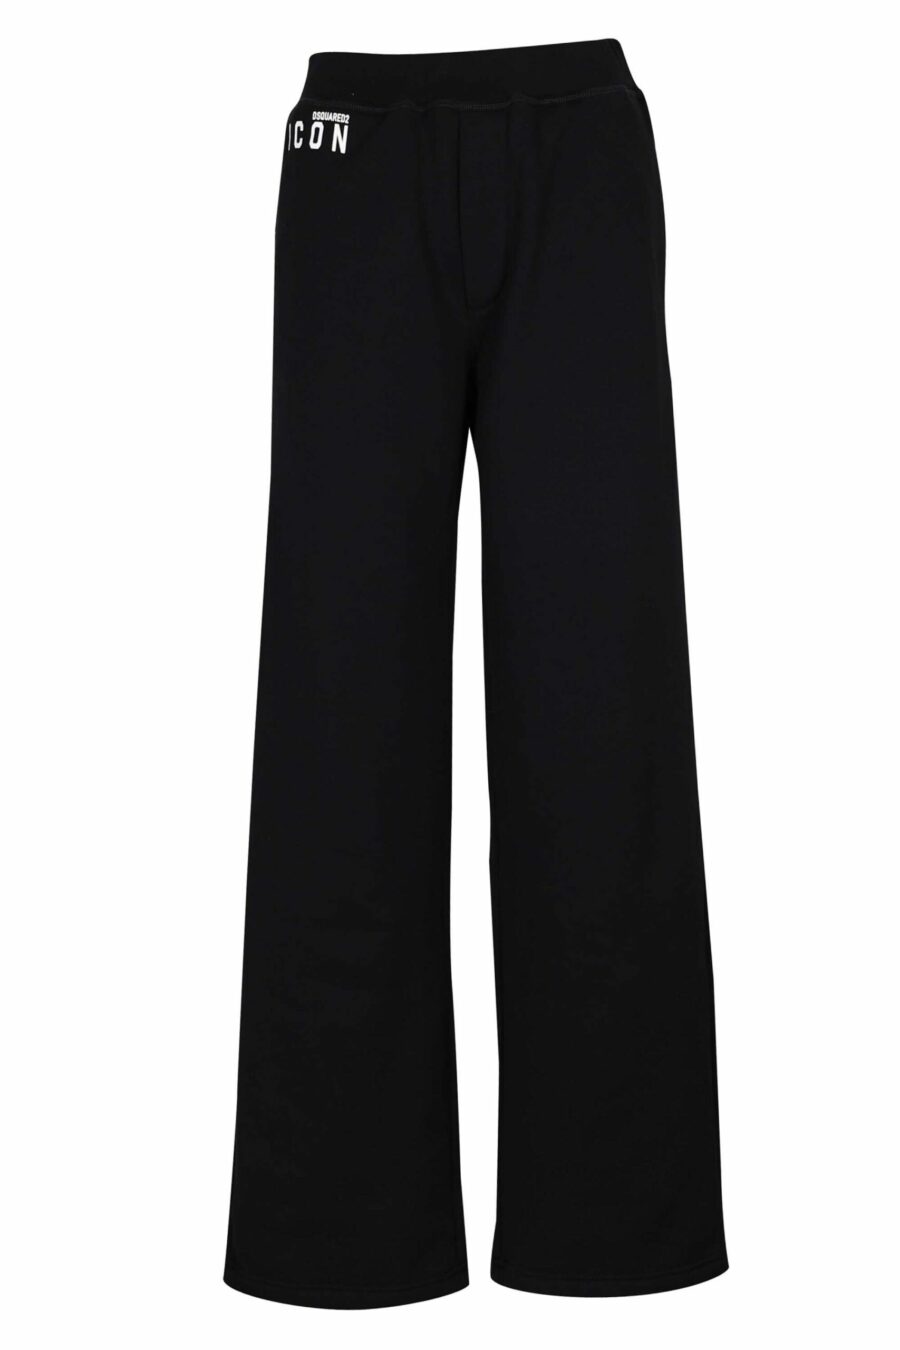 Pantalón de chándal negro con minilogo "icon" y bota ancha - 8054148401726 scaled